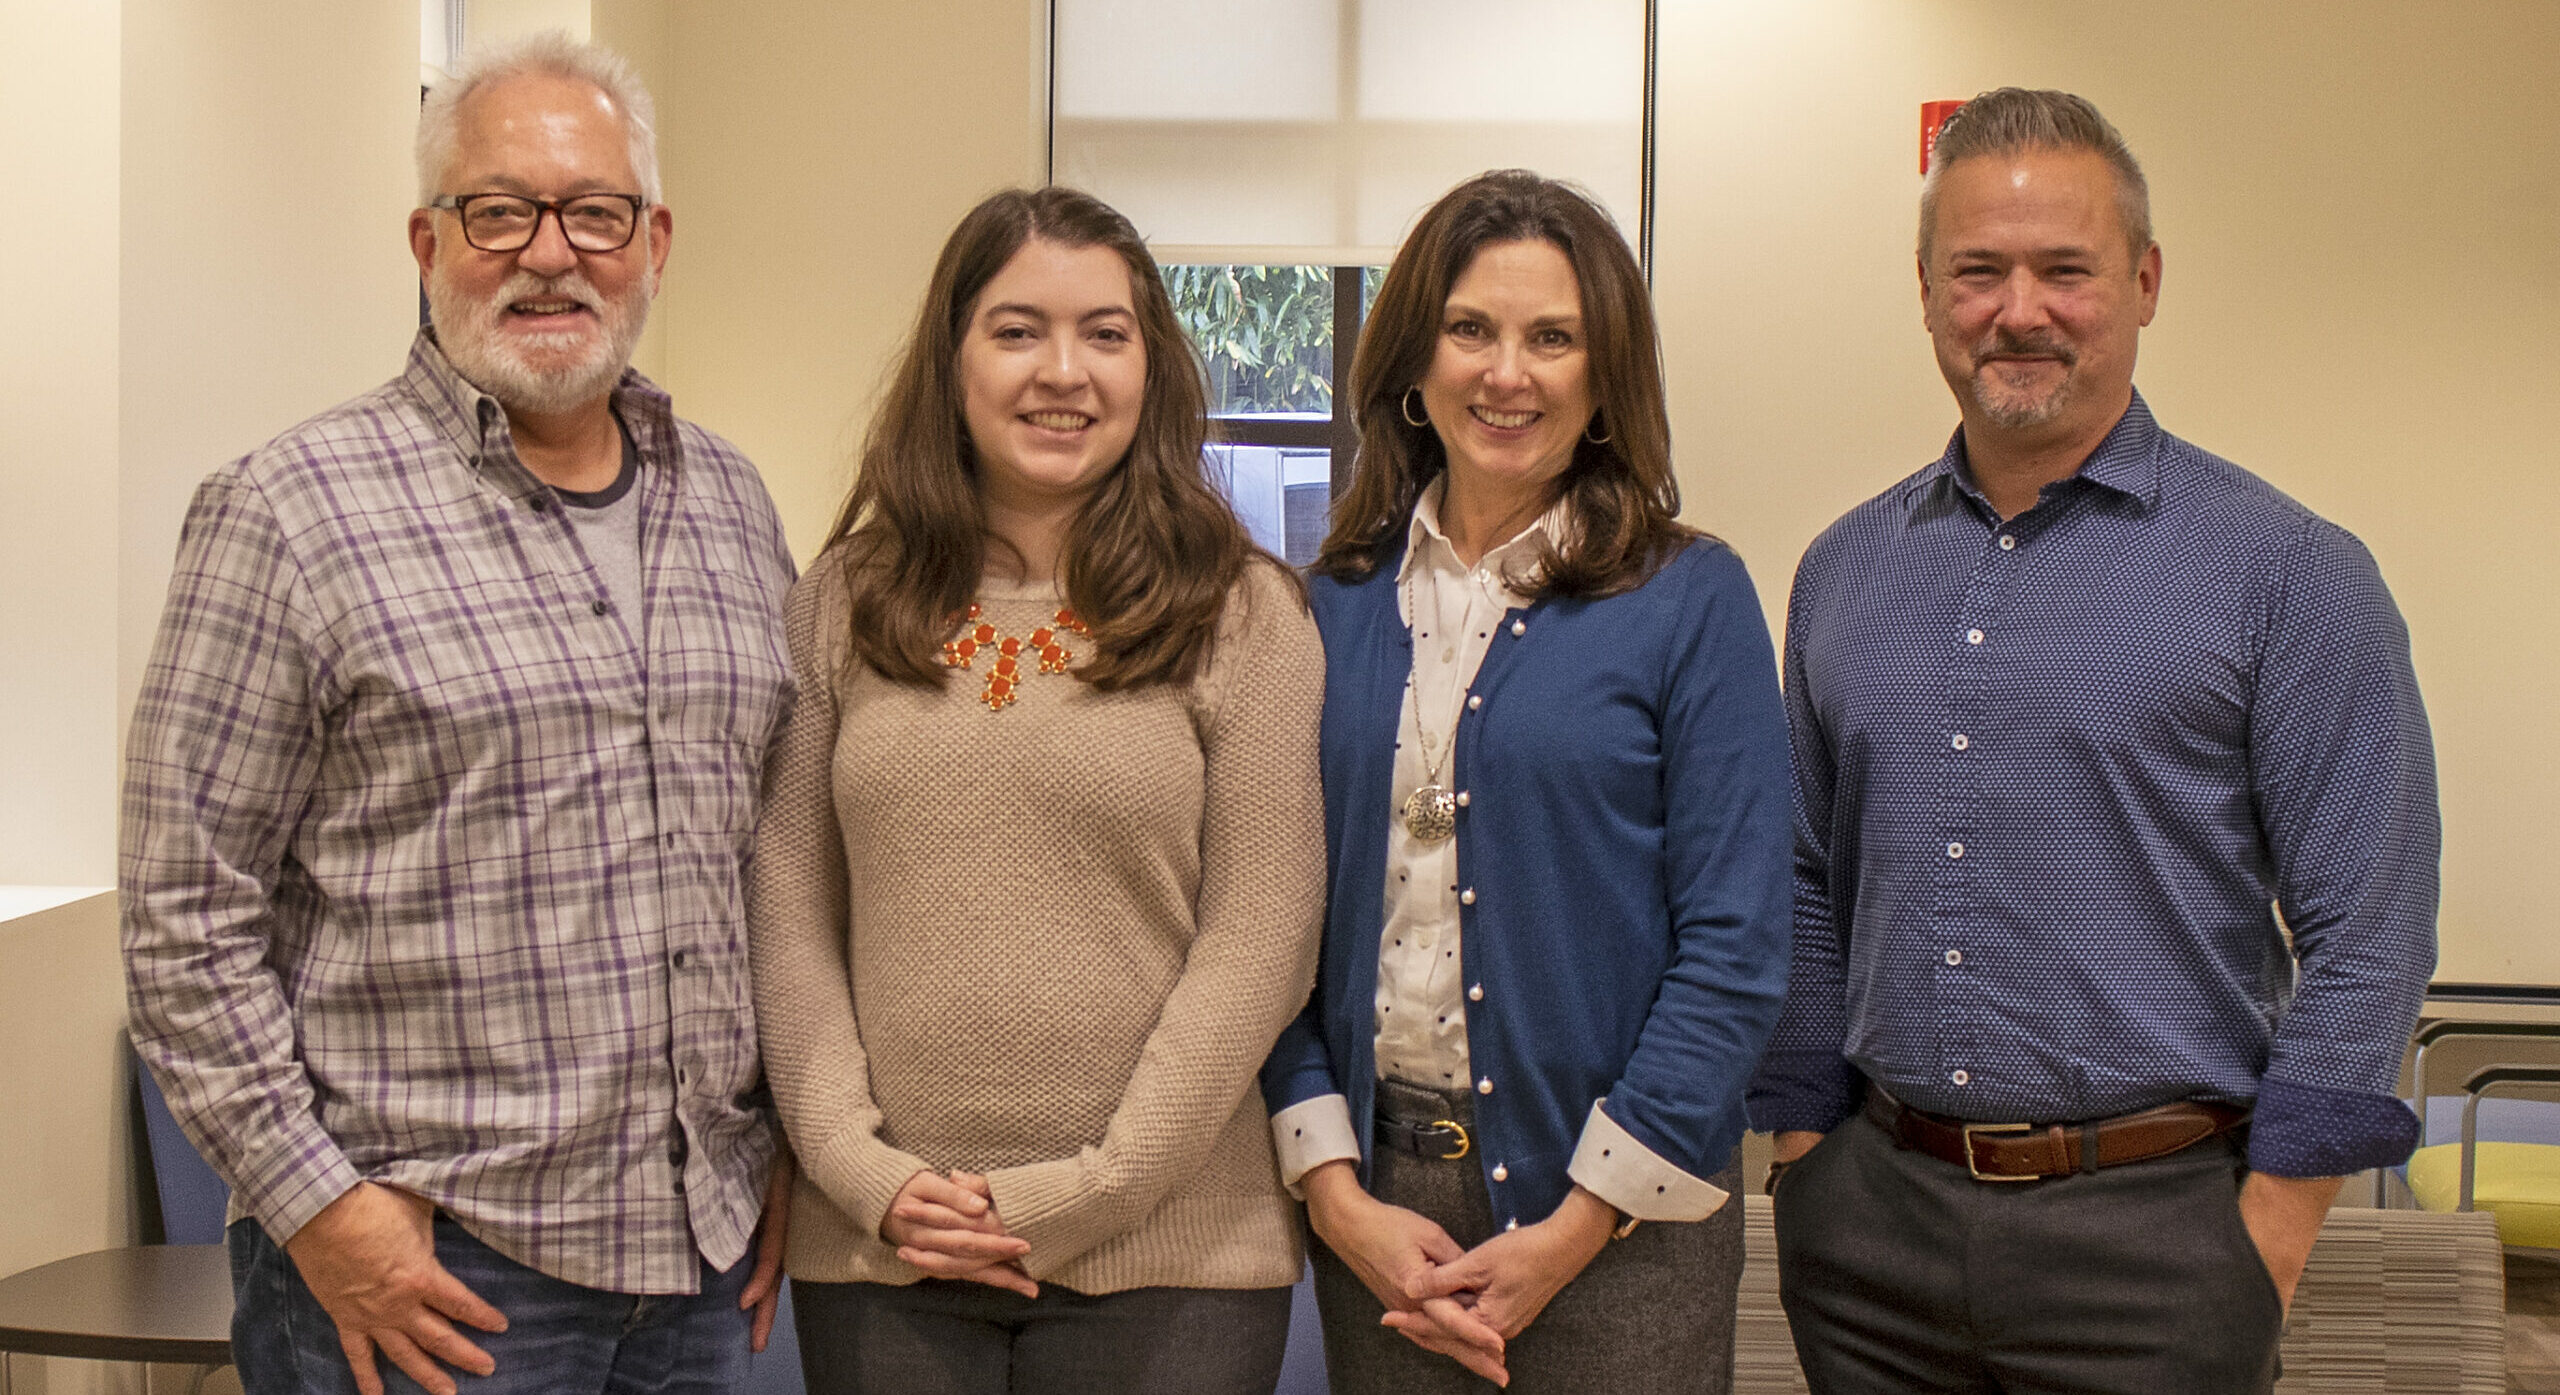 Meet The Development And Marketing Team At Good Samaritan Health Centers Of Gwinnett